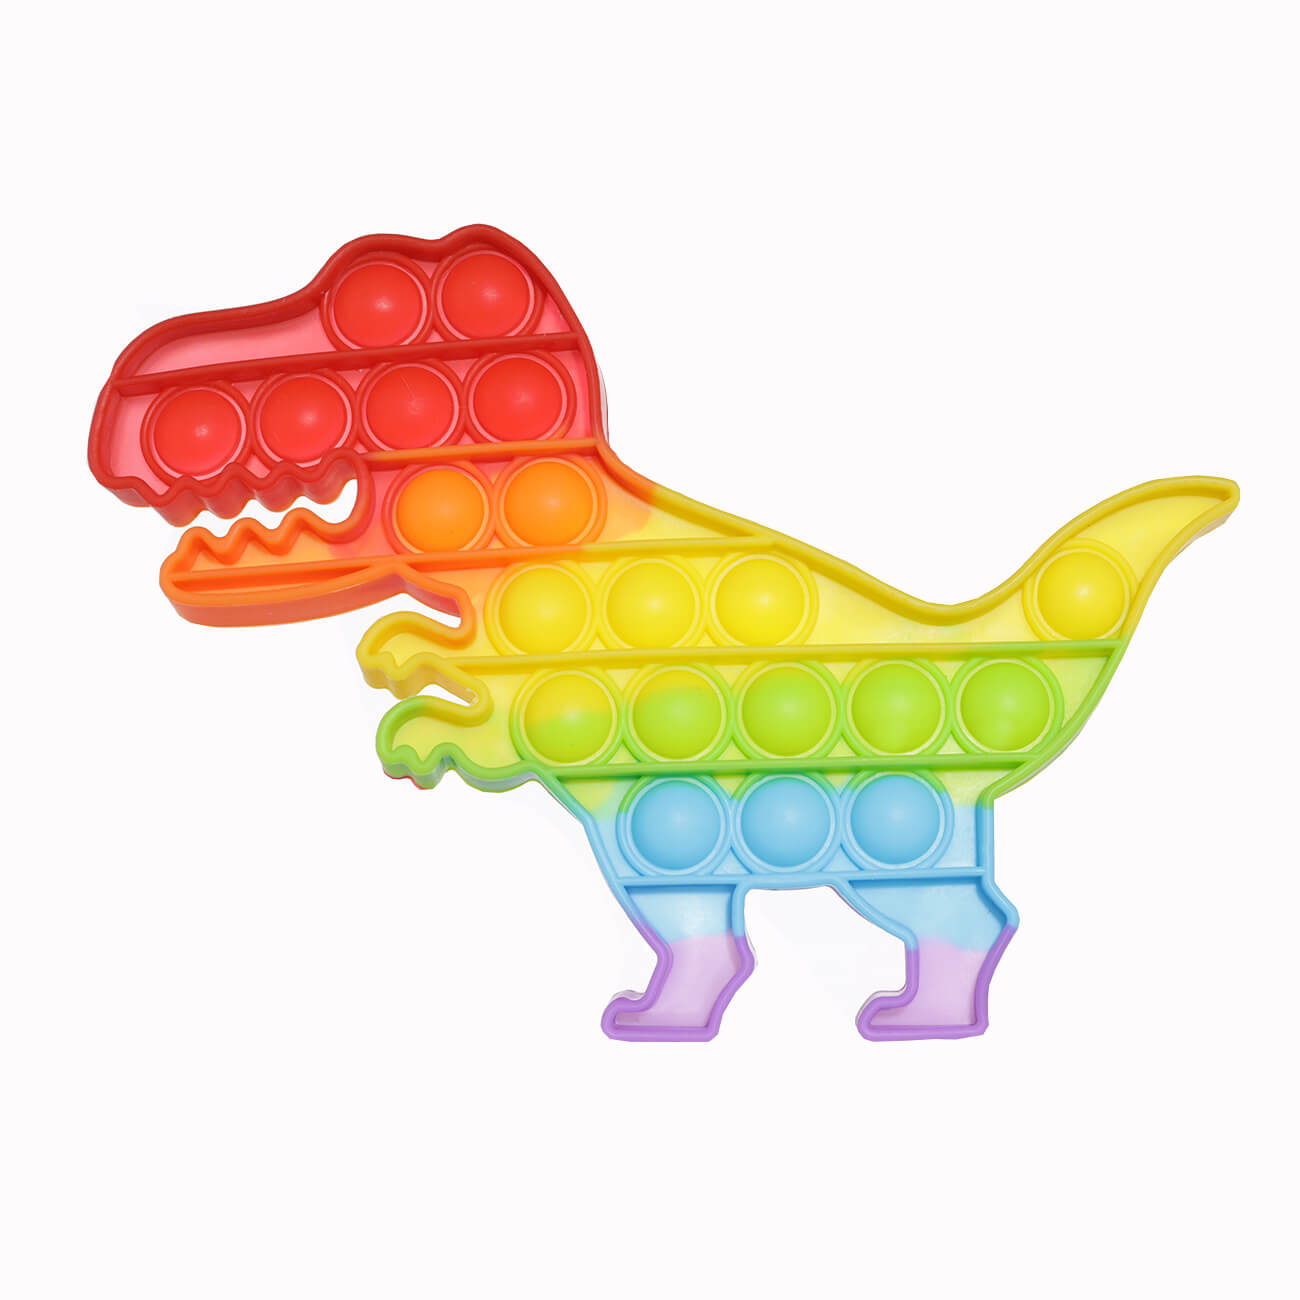 Игрушка-антистресс Pop-it, 19х14 см, силикон, цветная, Динозавр, Pop-it антистресс игрушка pop it резиновые пузырьки разно ный